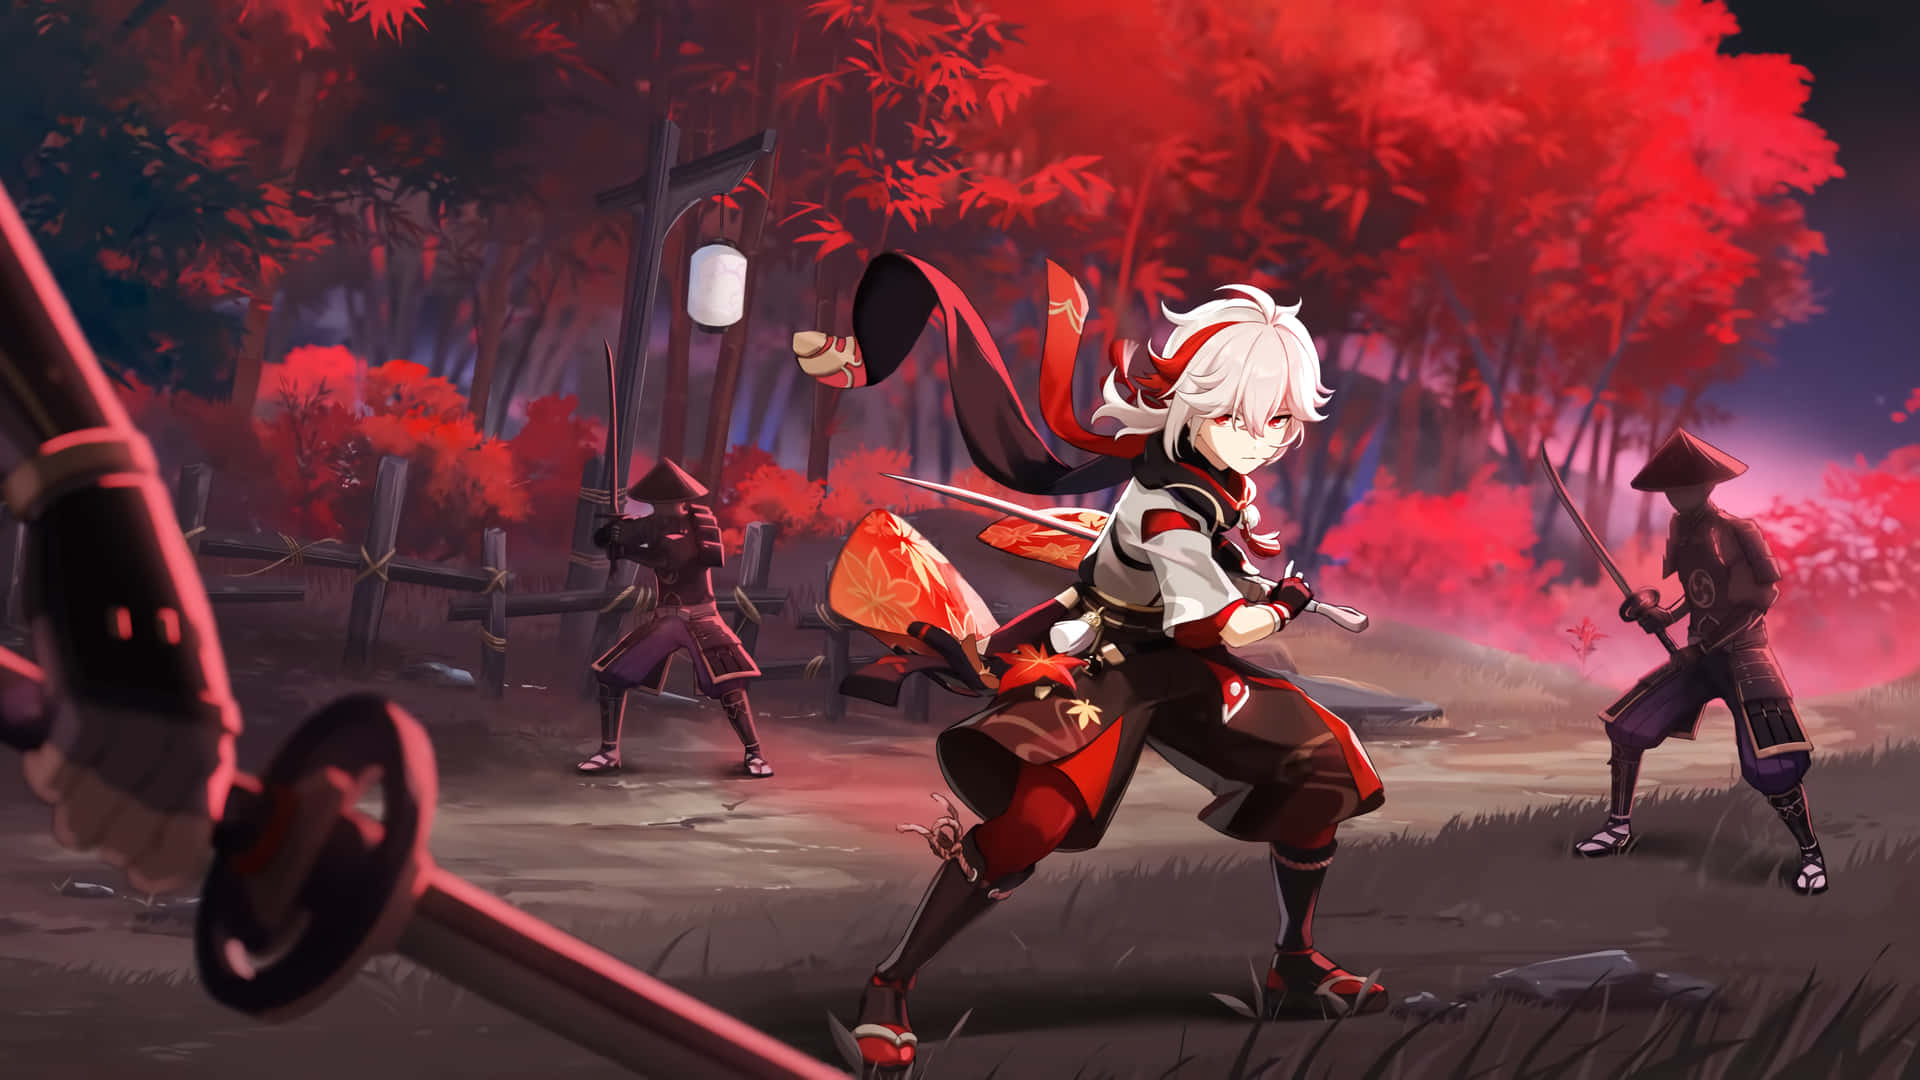 Kazuha,il Personaggio Del Videogioco Genshin Impact, Combatte Contro I Banditi. Sfondo